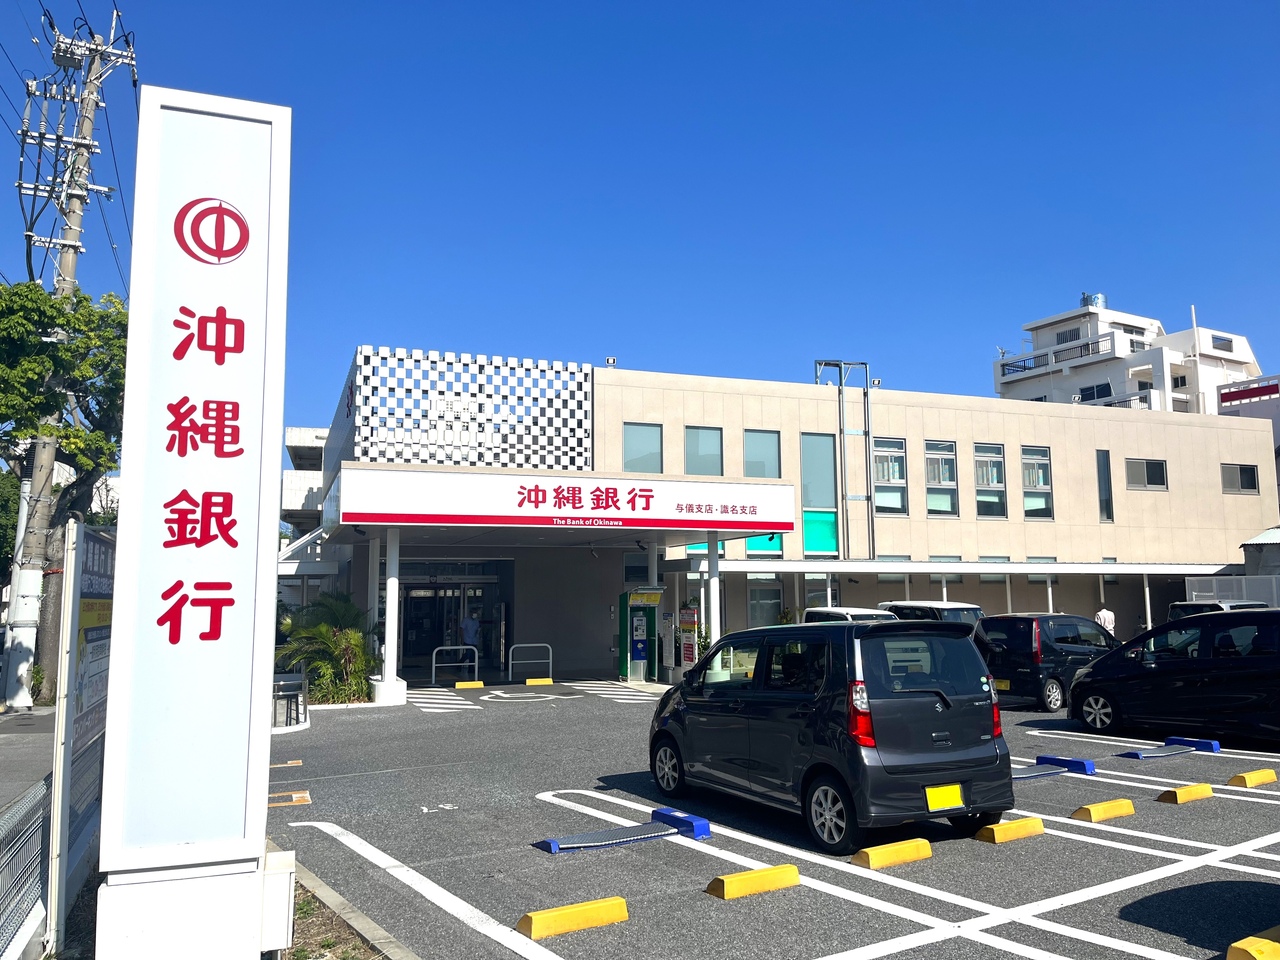 沖縄銀行 与儀支店・識名支店